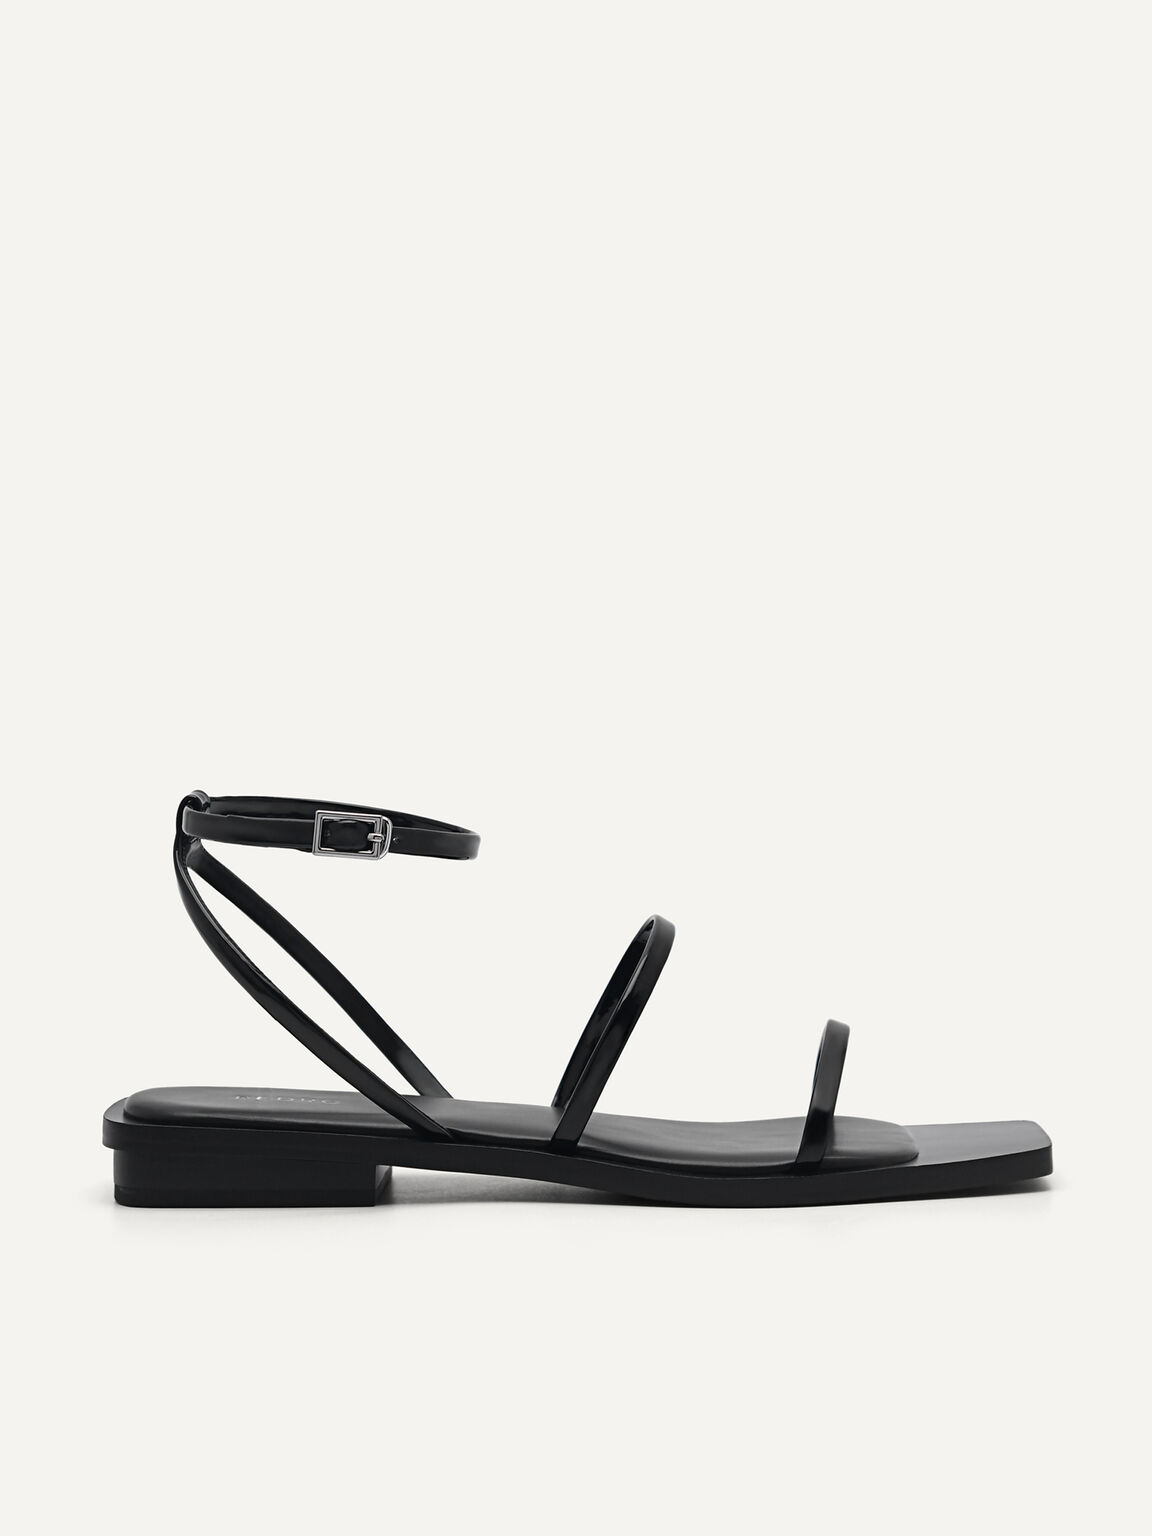 Vita Sandals, Black